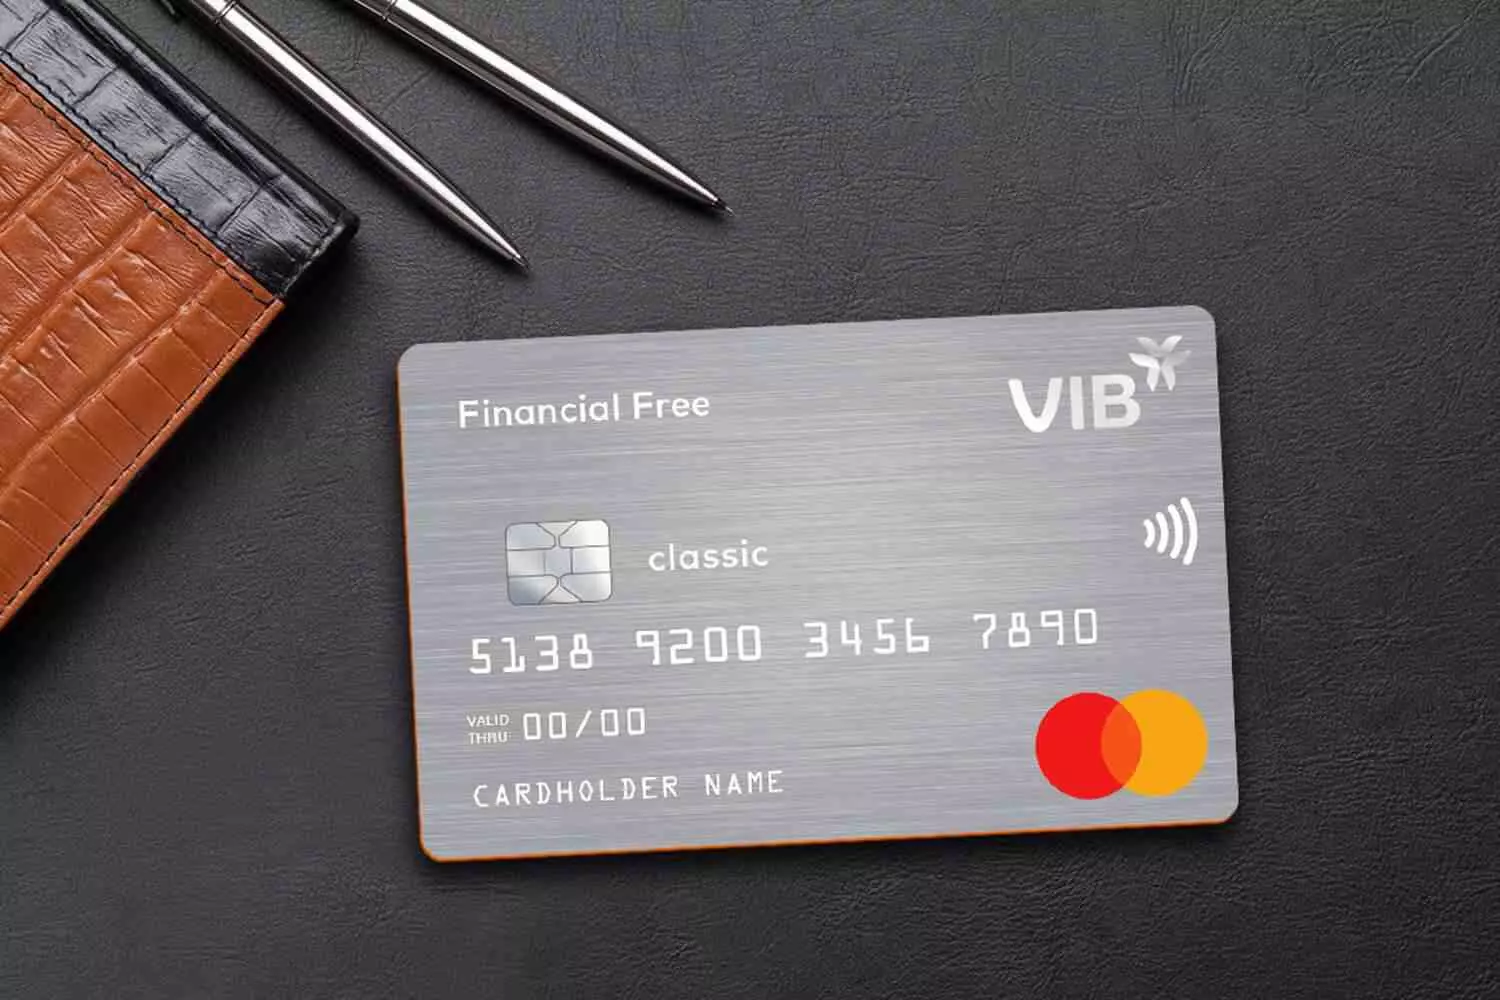 Dùng thẻ VIB Financial Free rút tiền mặt để được miễn lãi trong 3 kỳ sao kê đầu tiên